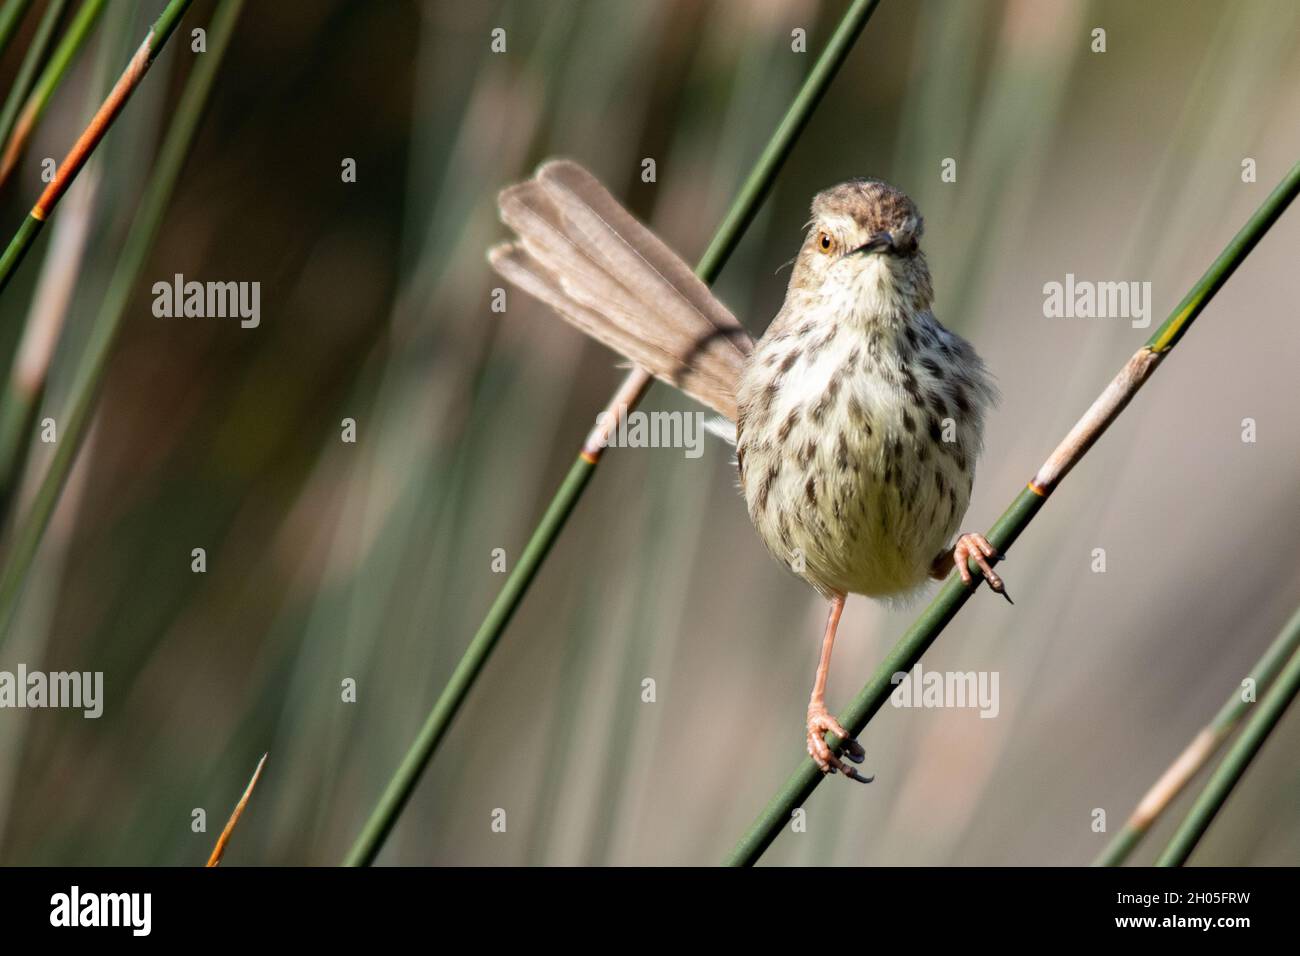 Un pájaro manchado marrón se sienta sobre una hoja de hierba, mirando en la cámara fotográfica. Foto de stock